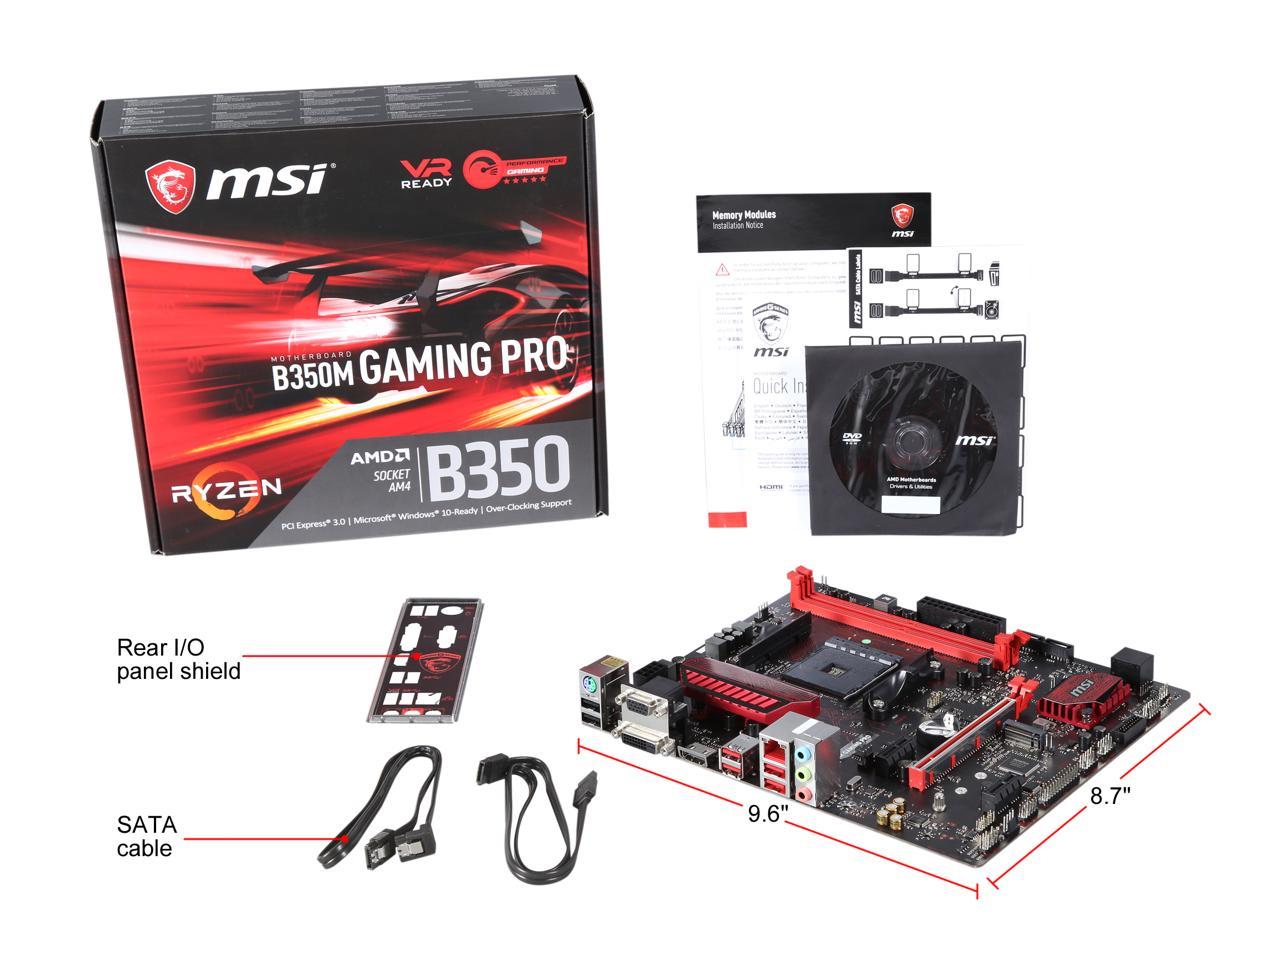 Red pro gaming. MSI a320m Gaming Pro. MSI b350m Gaming Pro. MSI b350m Gaming Plus. MSI b150a Gaming Pro.